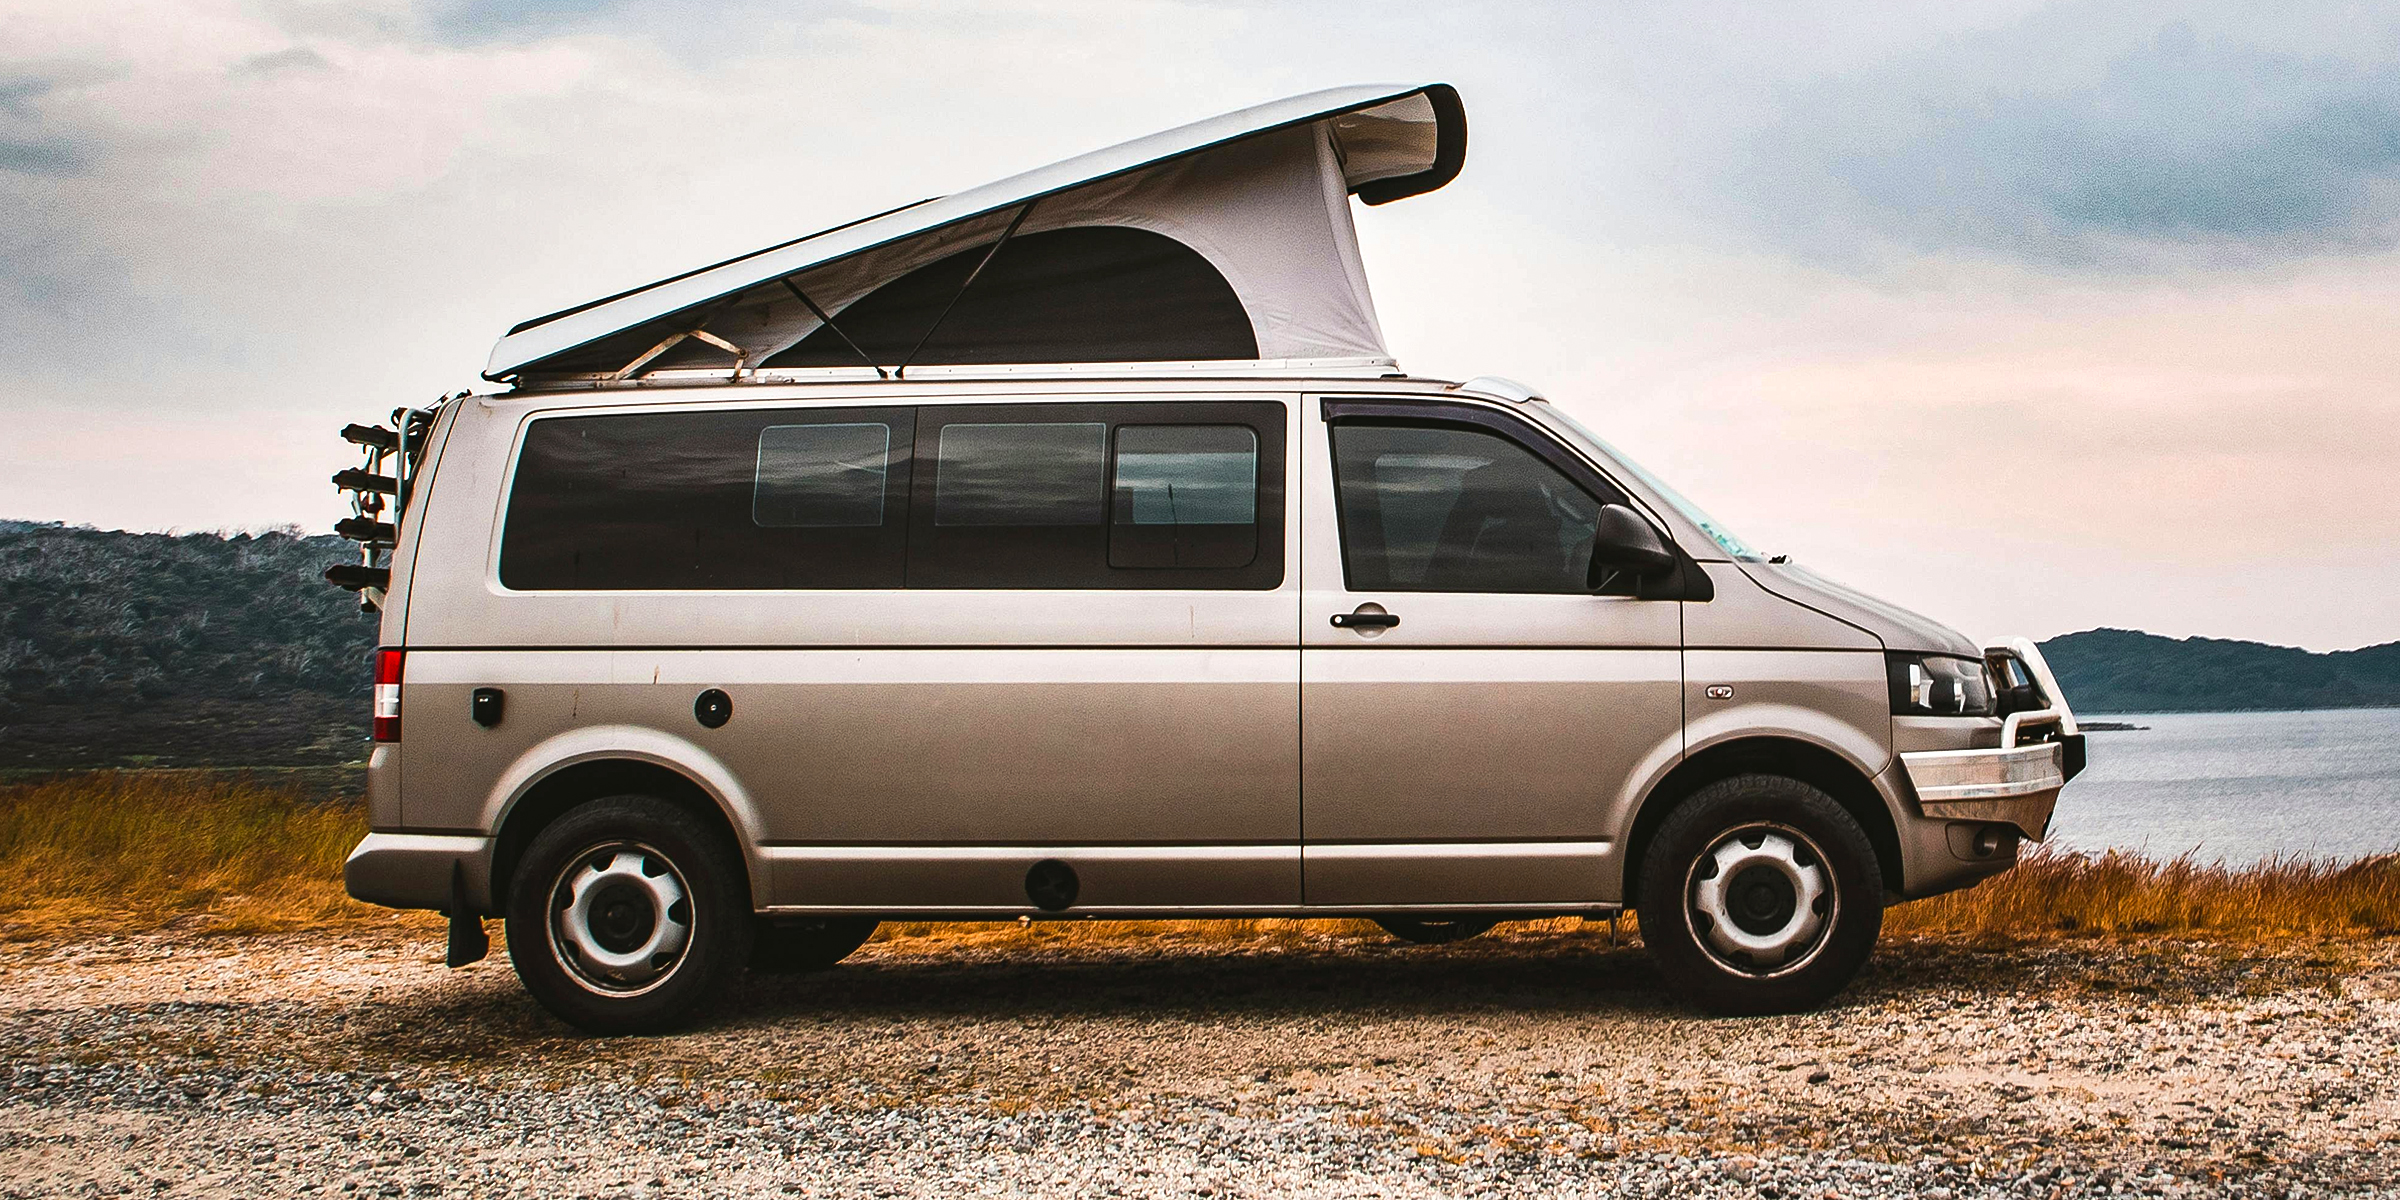 A silver camper van | Source: Pexels/Felix Haumann